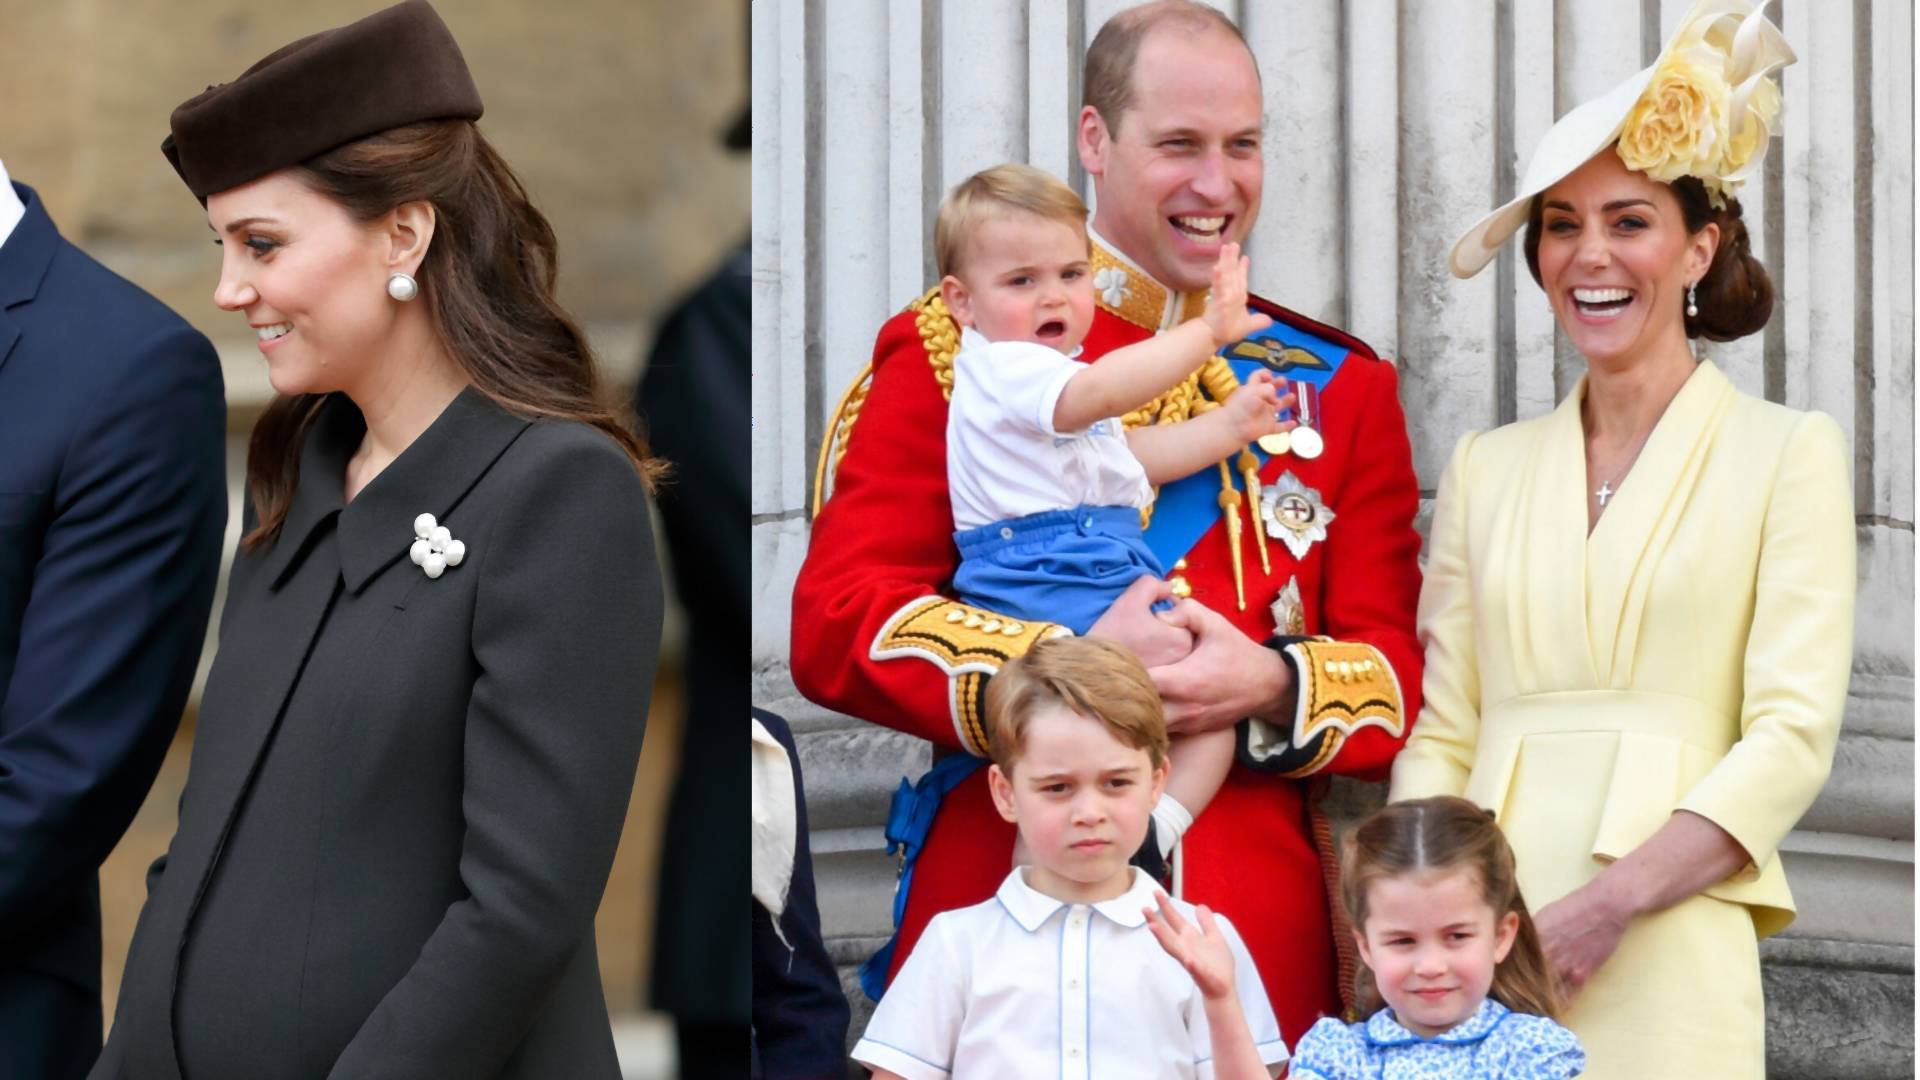 Księżna Kate otwarcie o swoich trudnych ciążach. "Zdecydowałam się na hipnoporód"